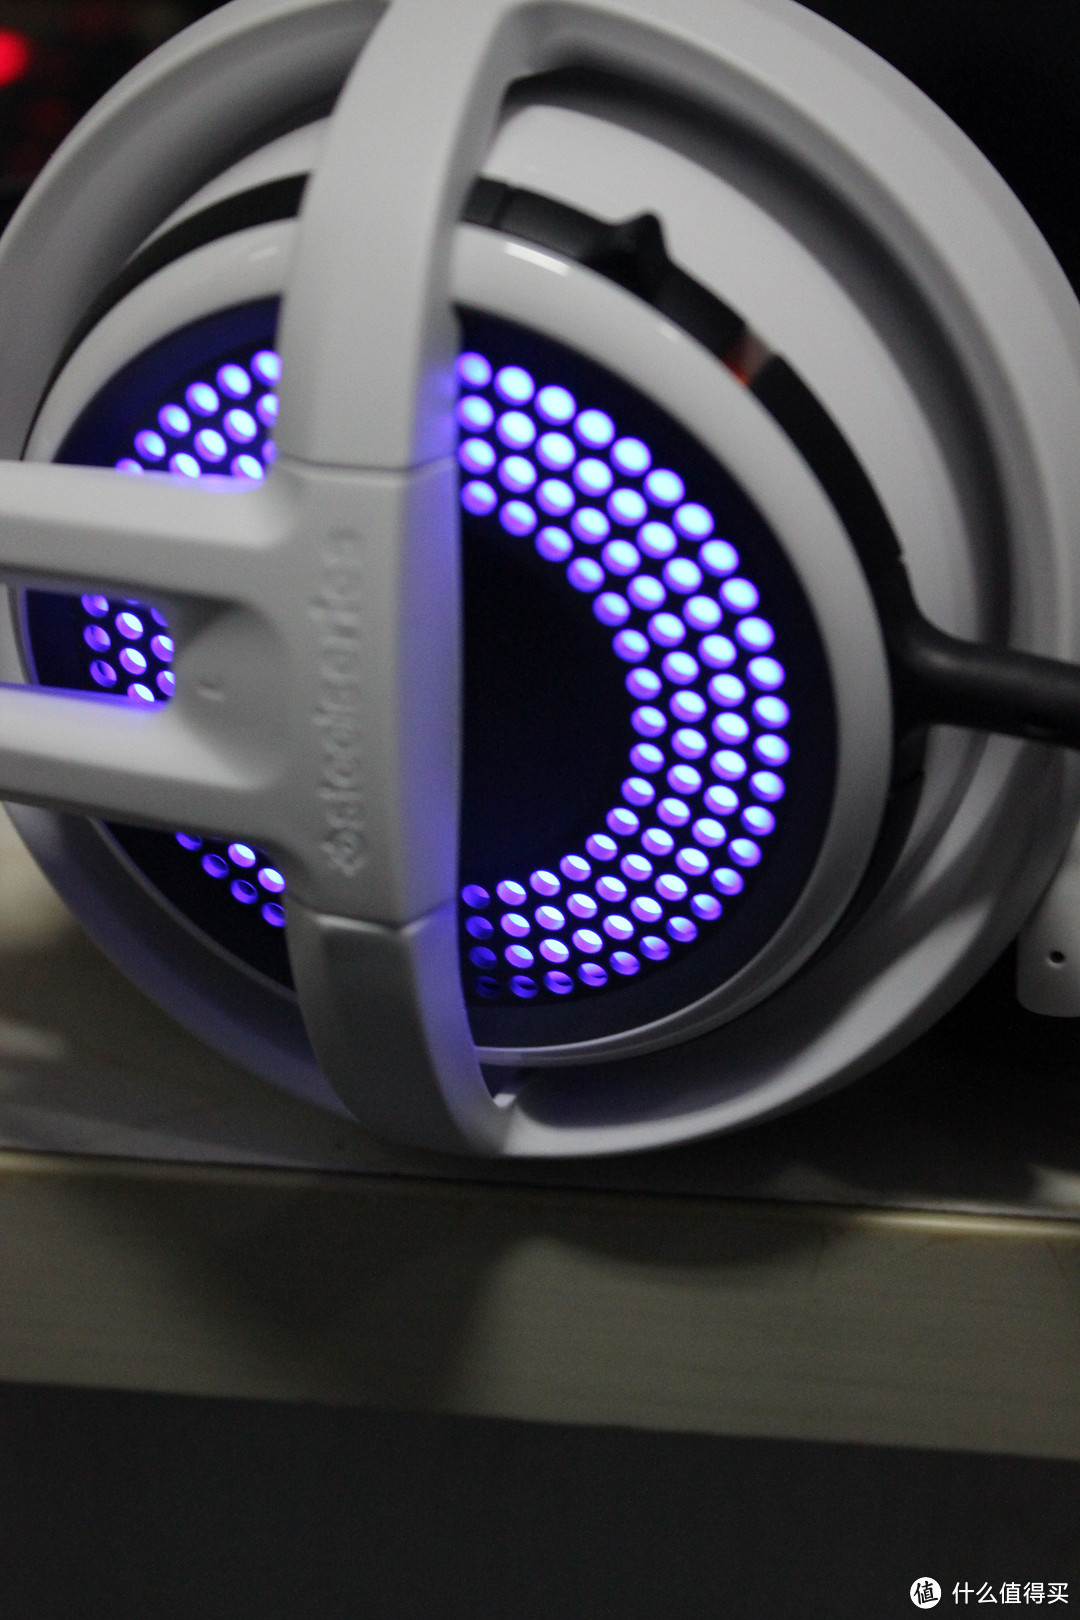 做工出色、灯光很炫、特色突出——SteelSeries 赛睿 西伯利亚350 游戏耳机首发众测